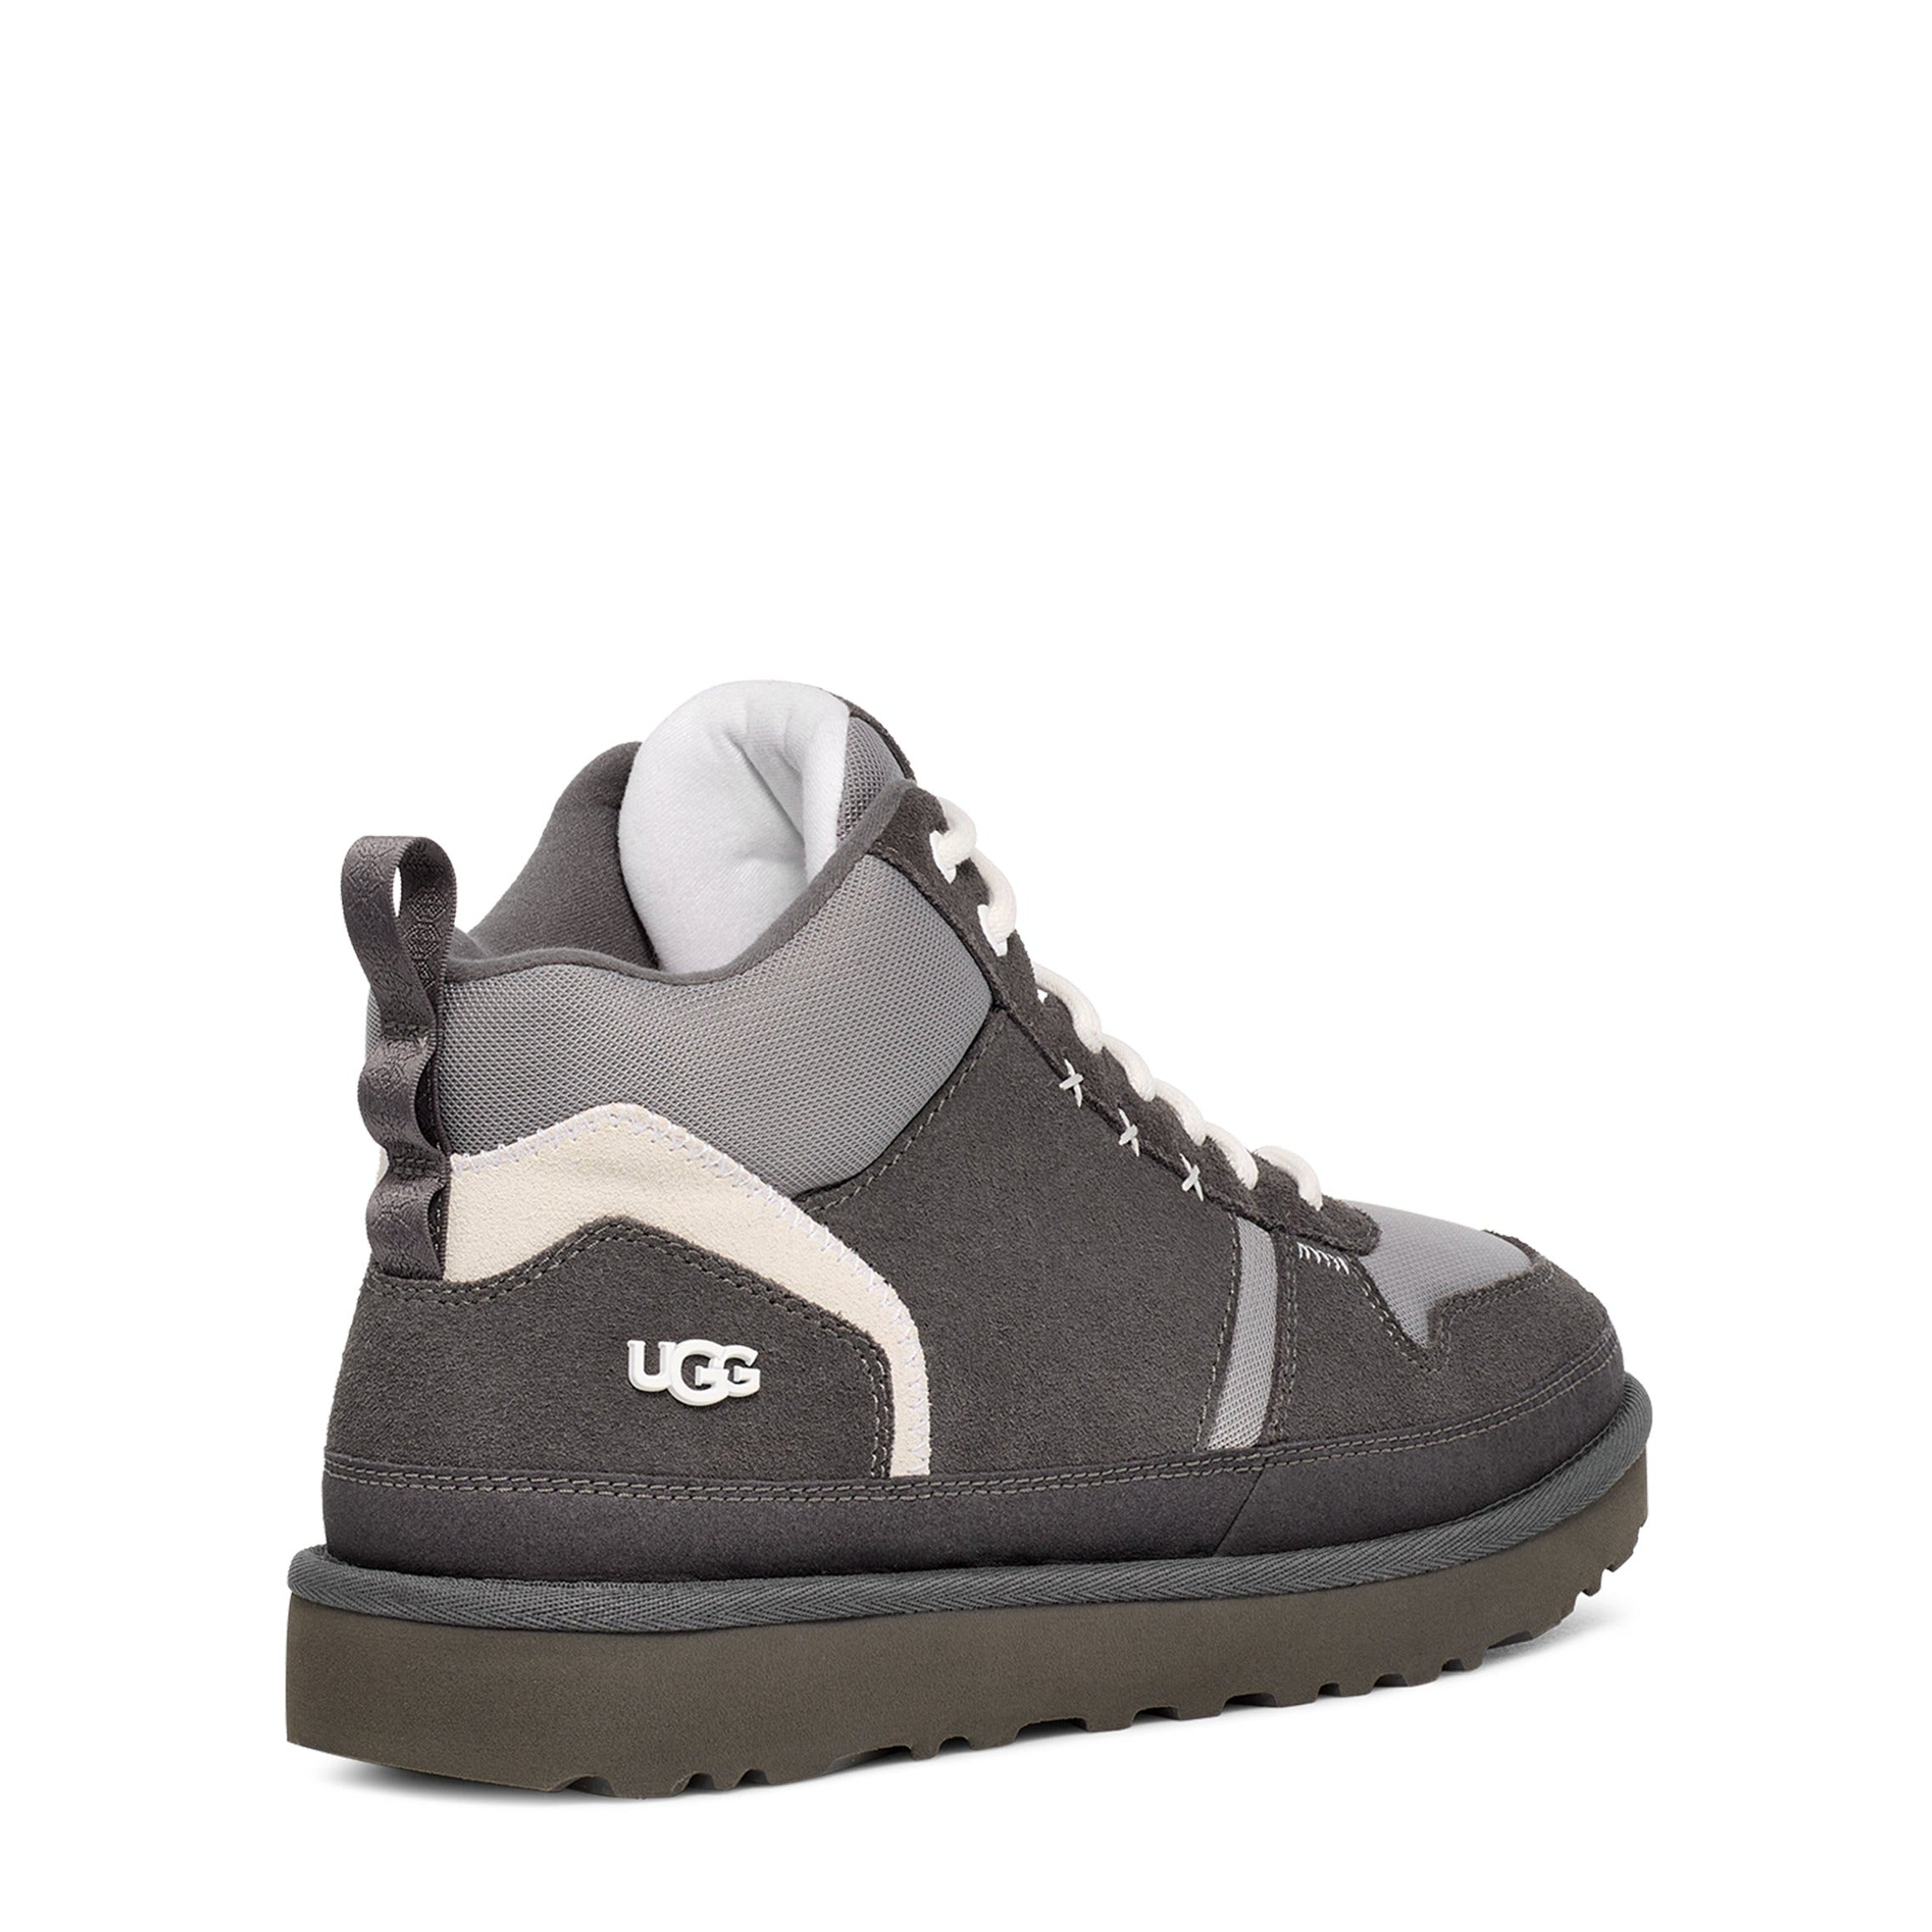 Sample UGG Highland Hi Heritage Suede Sneaker   